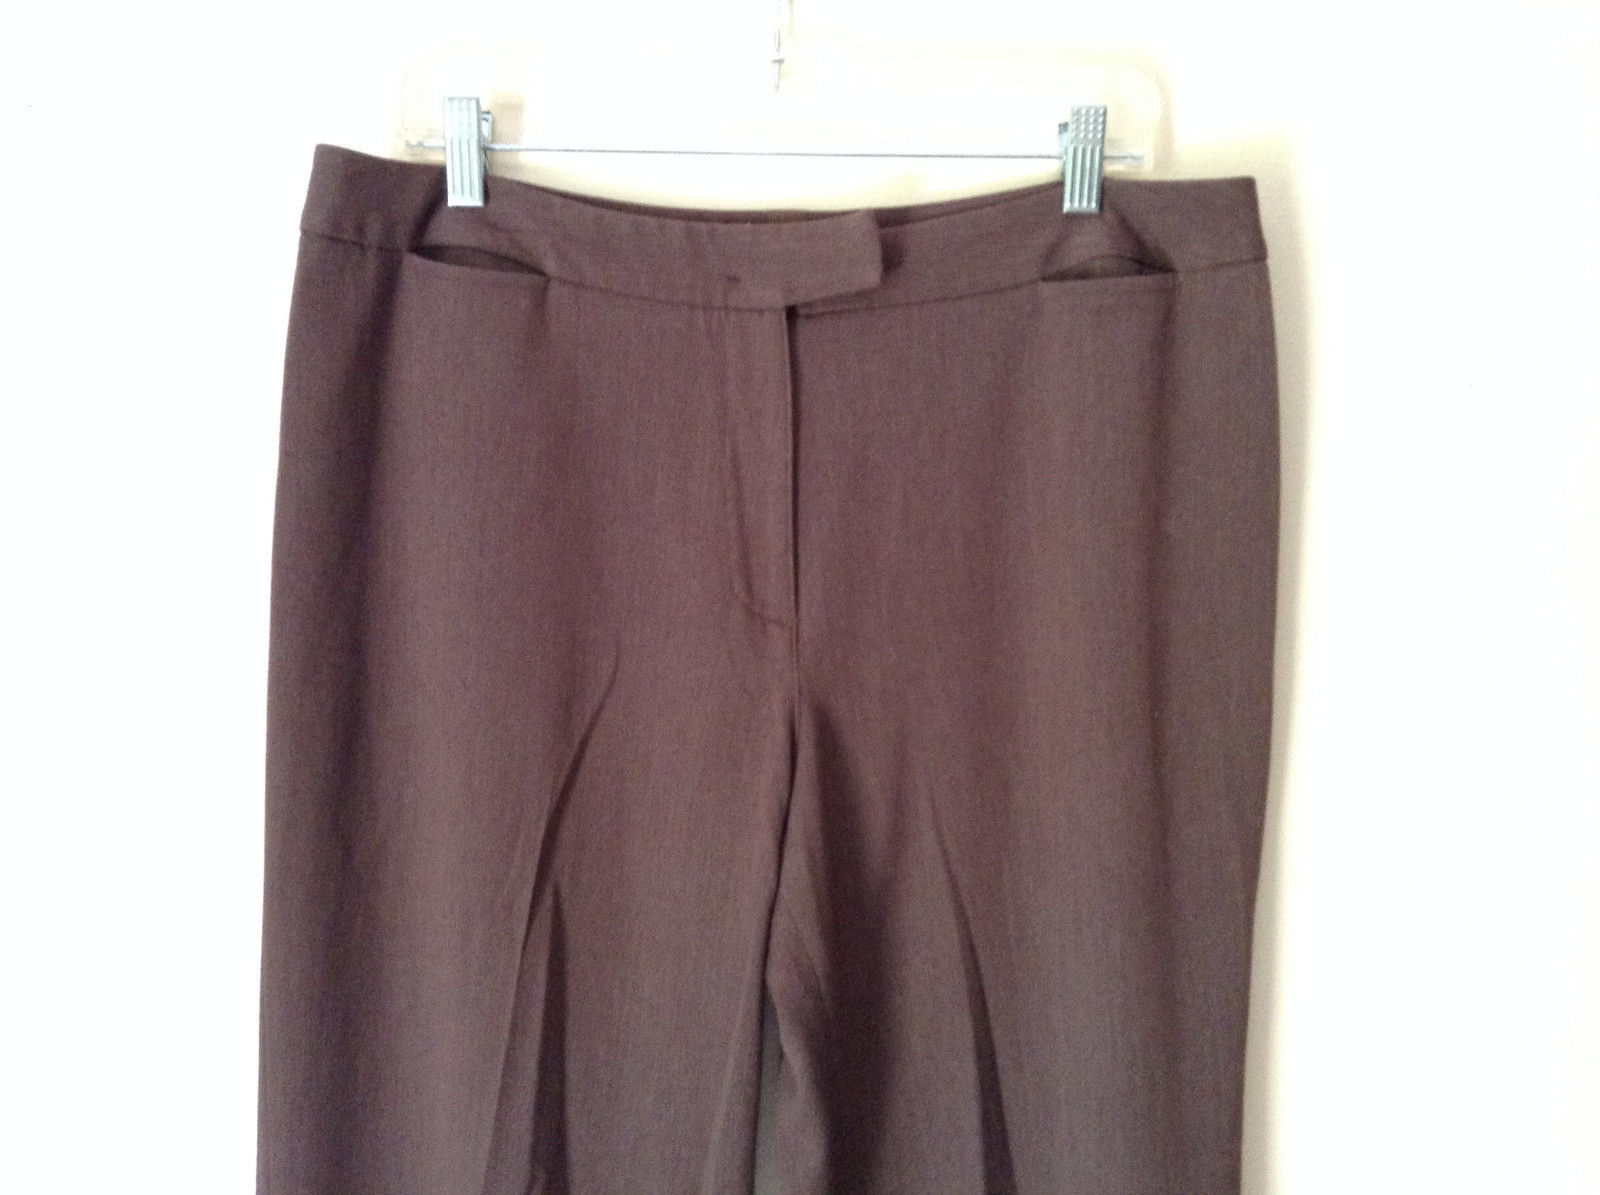 Brown Dress Pants by Pendleton Polyester Rayon Spandex Size 14 - Pants